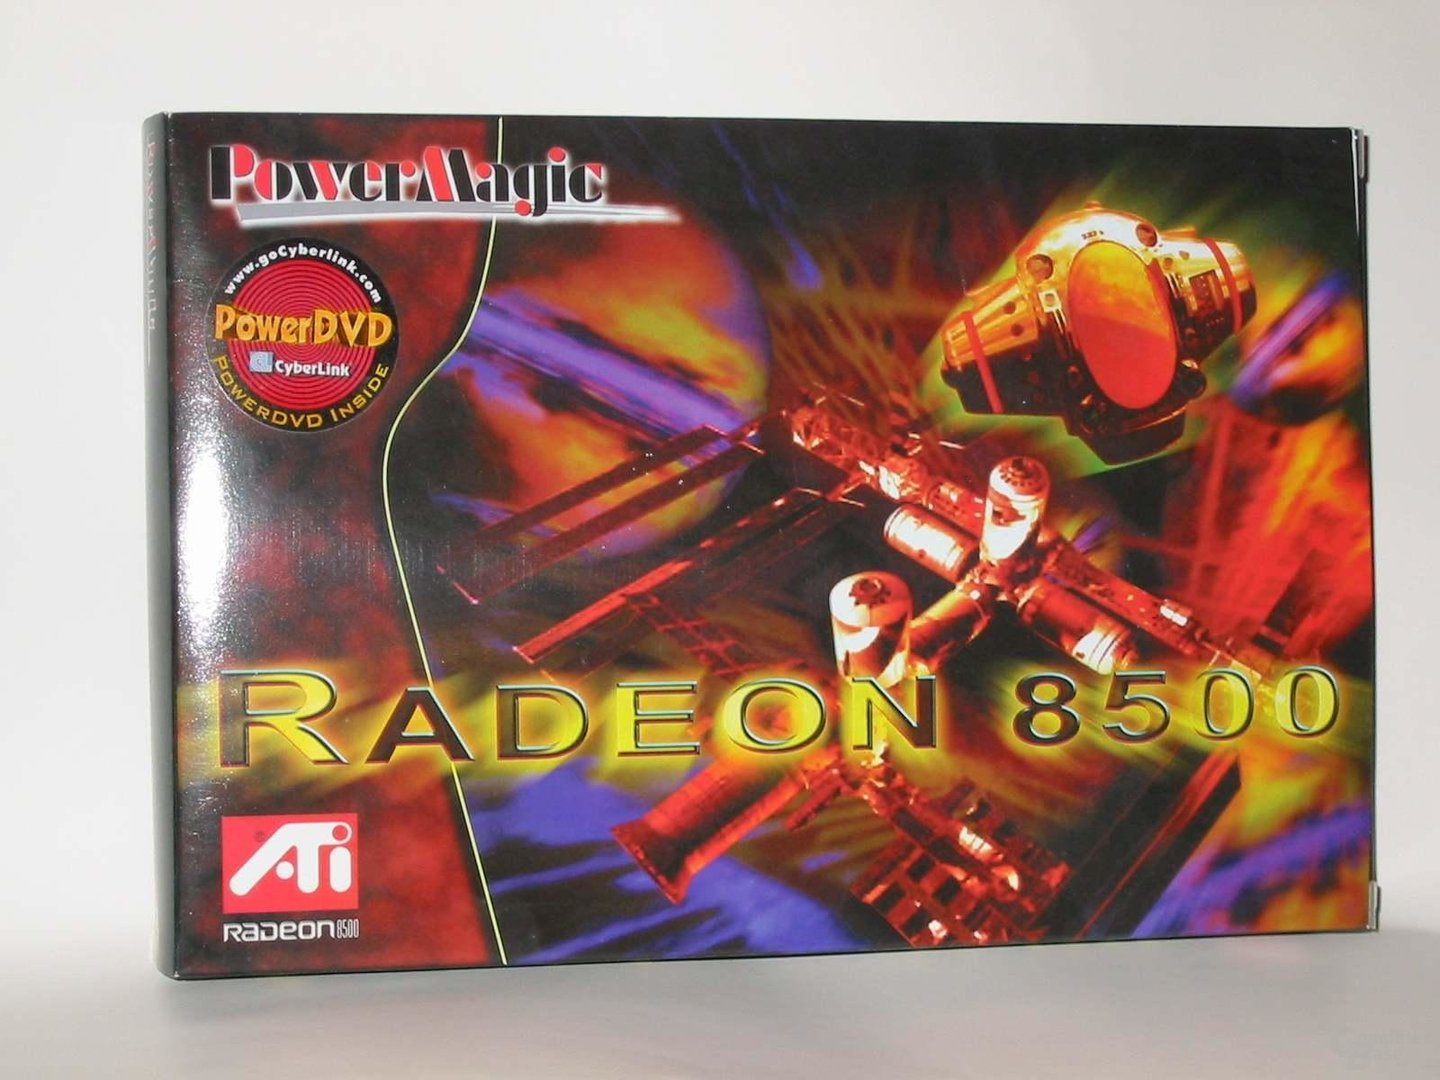 Die Verkaufsverpackung der PowerMagic Radeon 8500